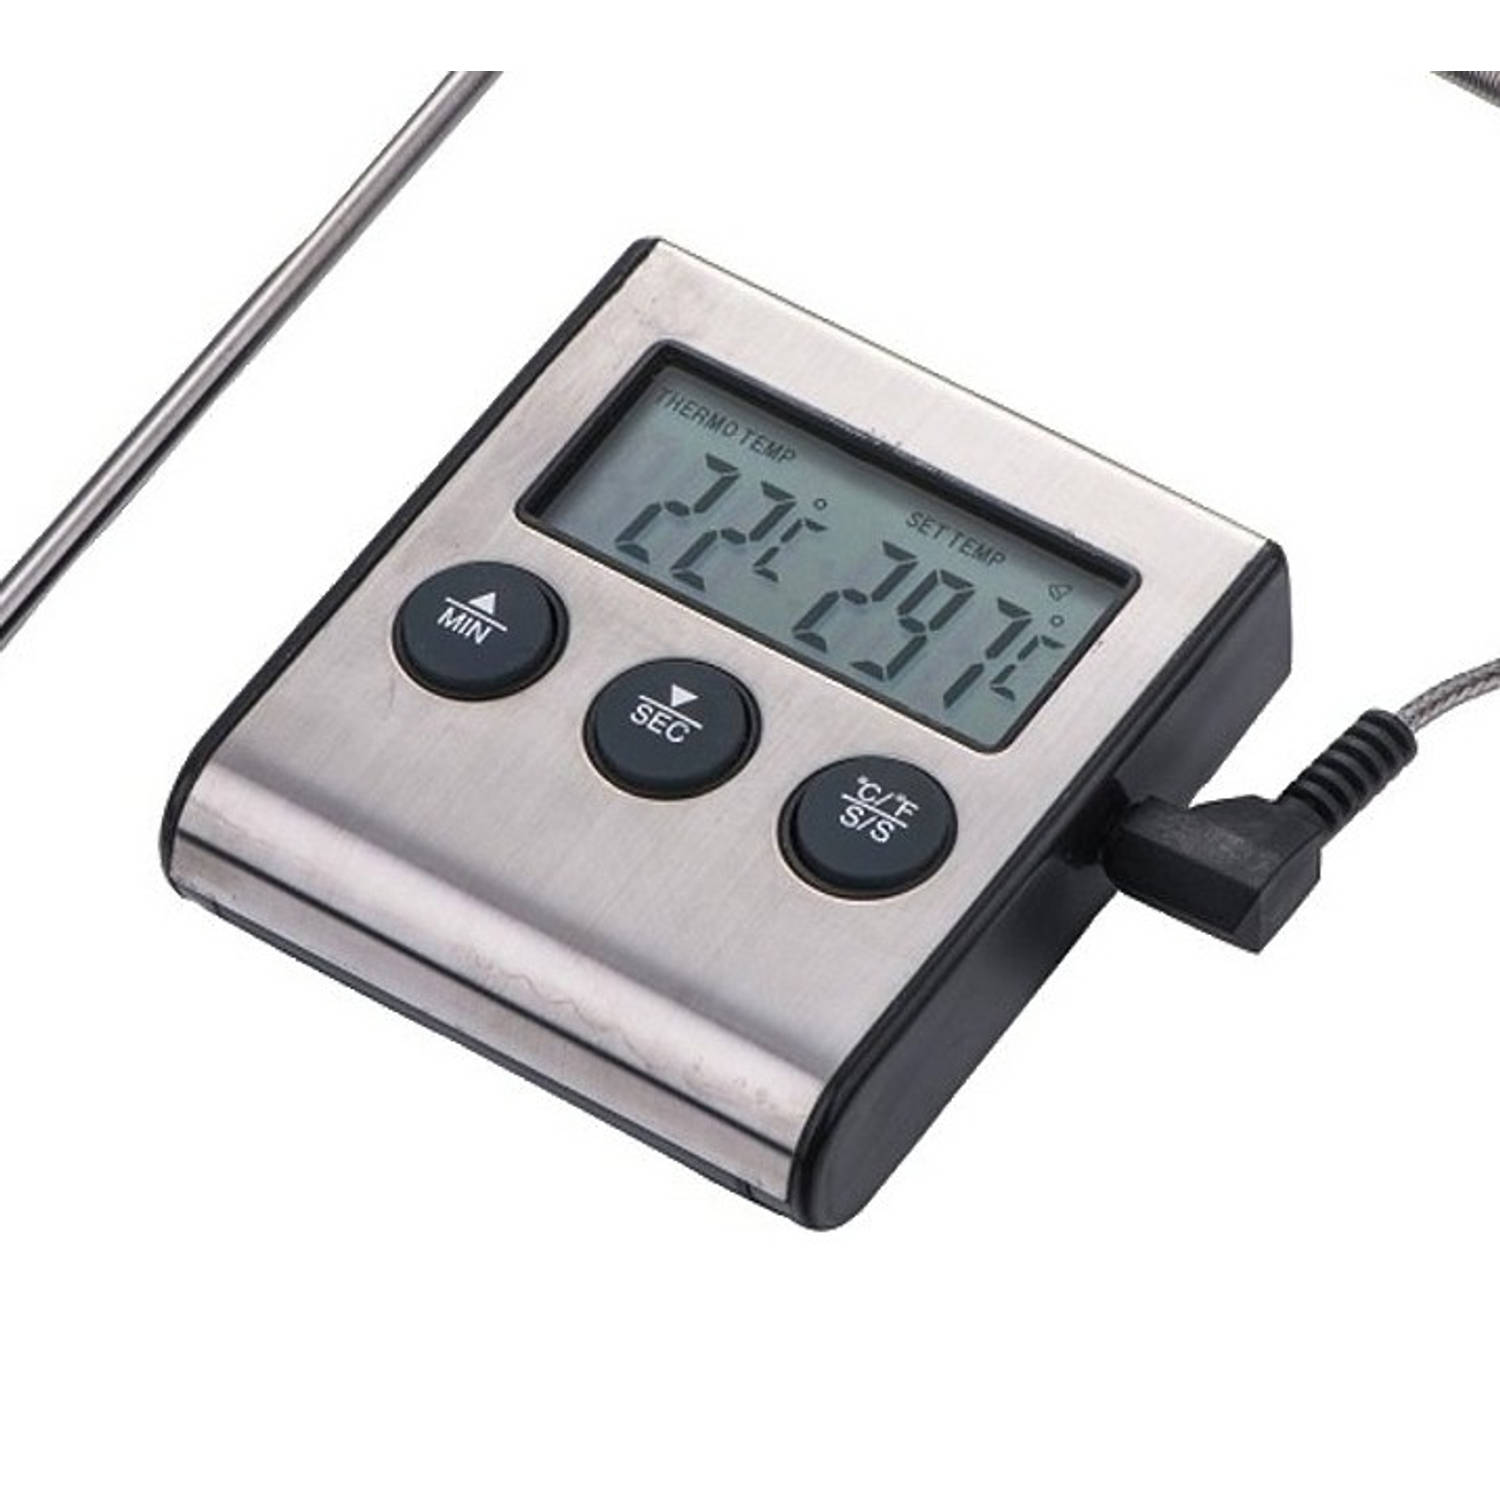 Digitale Keukenthermometer - Inclusief timer, Alarmfunctie en Batterij